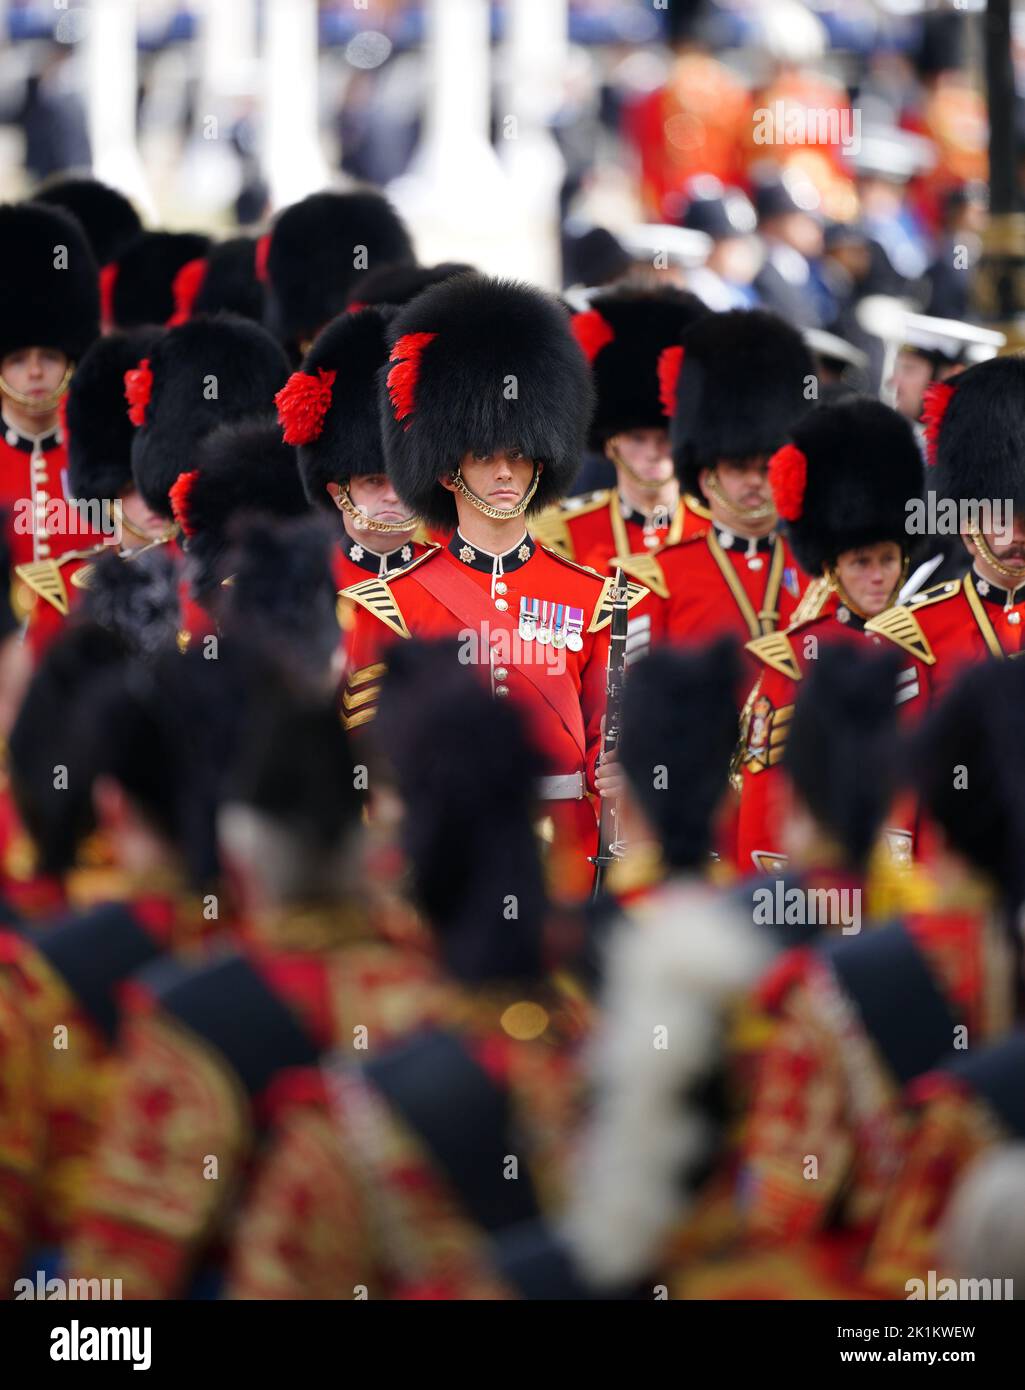 Des membres de l'armée participent au défilé de cérémonie à la suite de son funérailles d'État à l'abbaye de Westminster, à Londres. Date de la photo: Lundi 19 septembre 2022. Banque D'Images